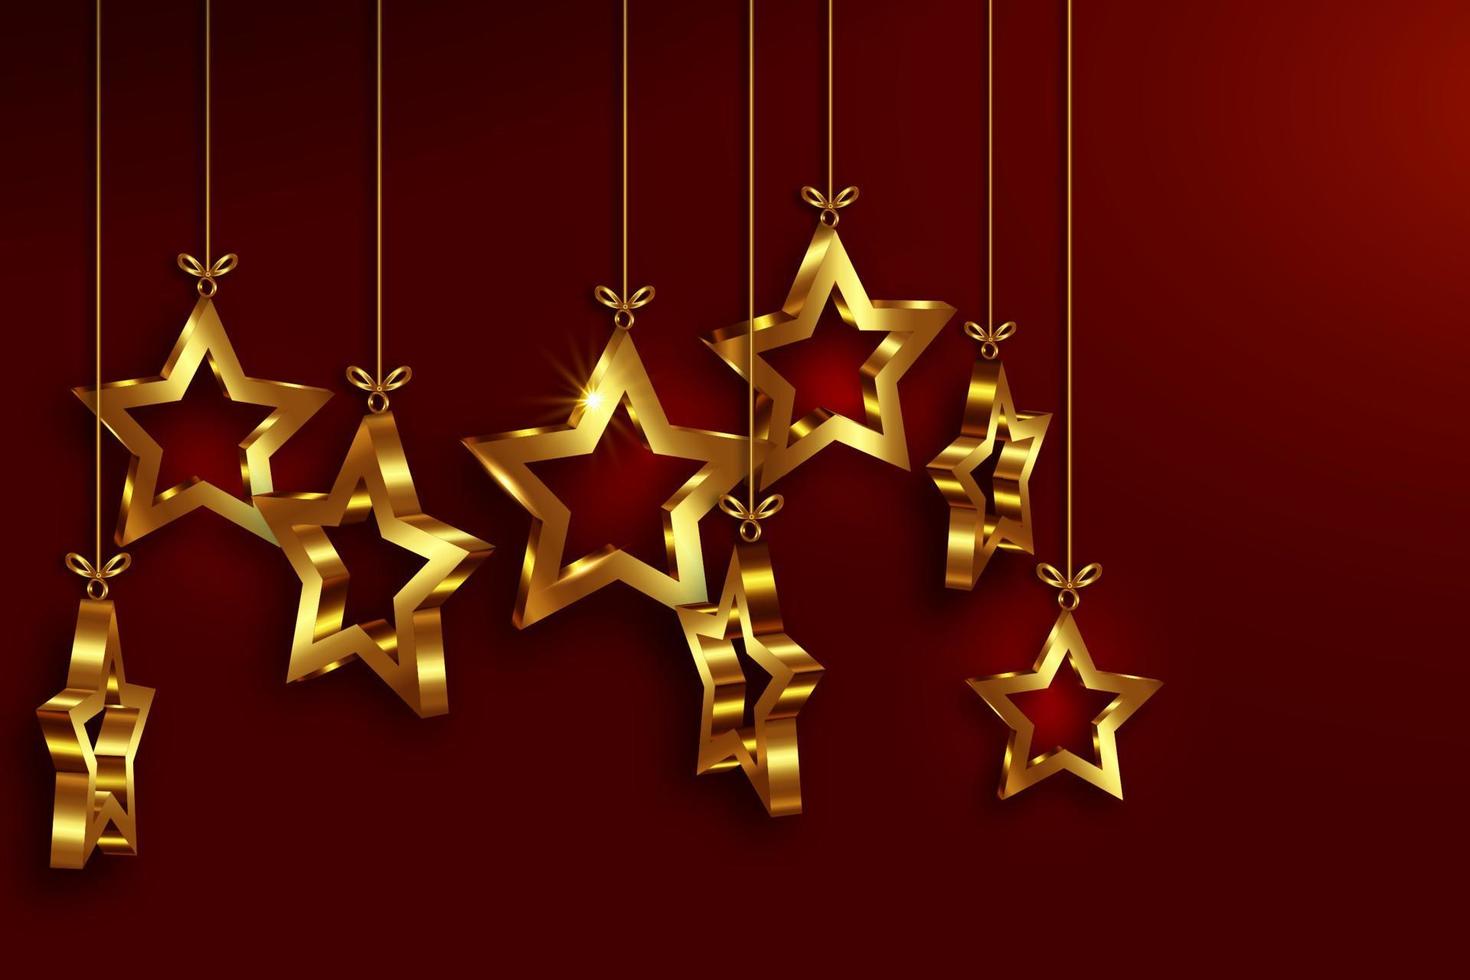 kerstballen in 3D-sterrenvorm, kerst luxe vakantiebanner met set gouden ster, vrolijk kerstfeest en gelukkig nieuwjaar wenskaart. gouden luxe vectorillustratie geïsoleerd op rode background vector